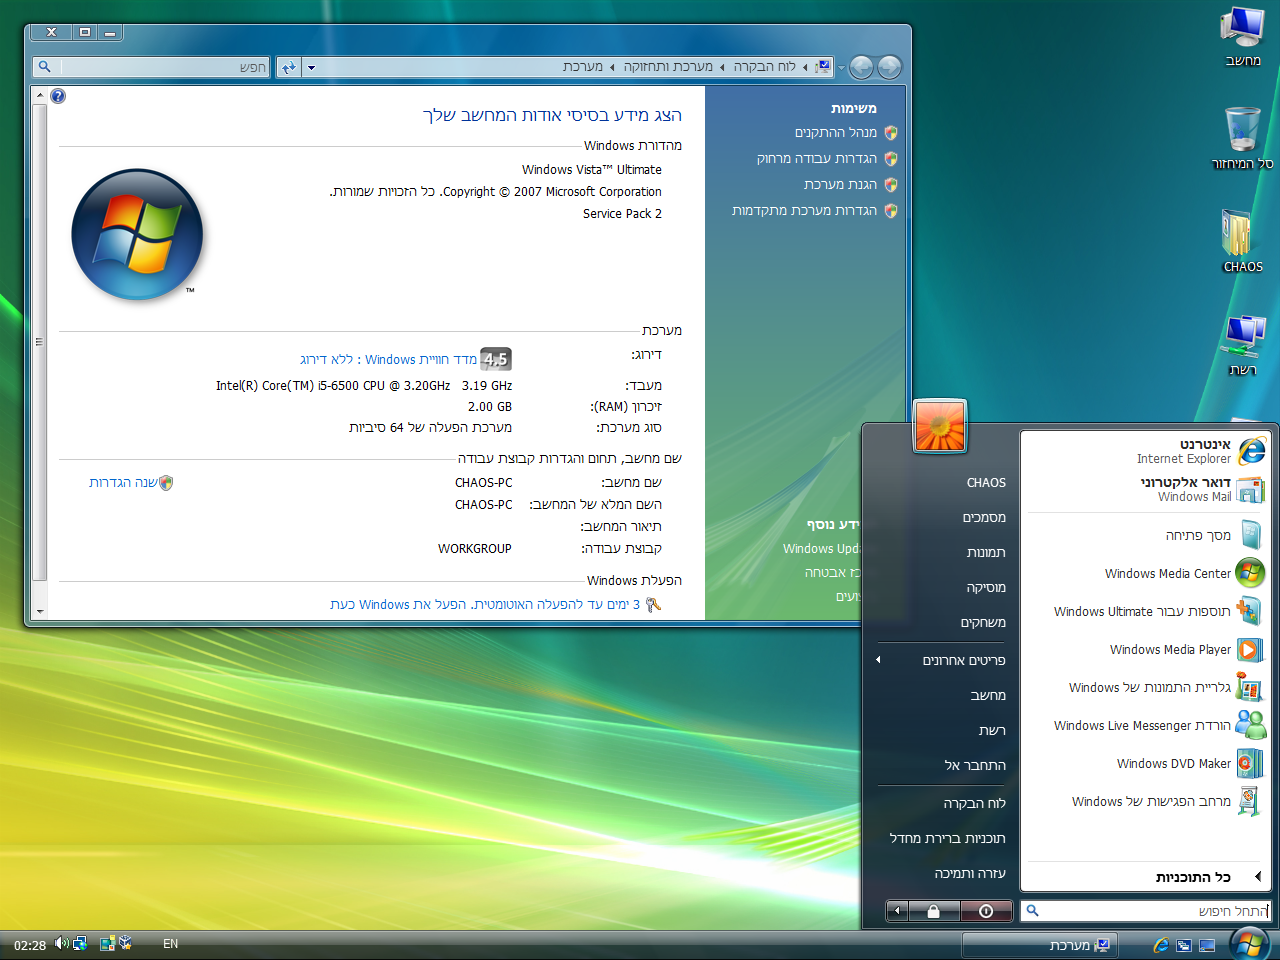 Windows Vista Anbieter Pack 2 Hebräisch